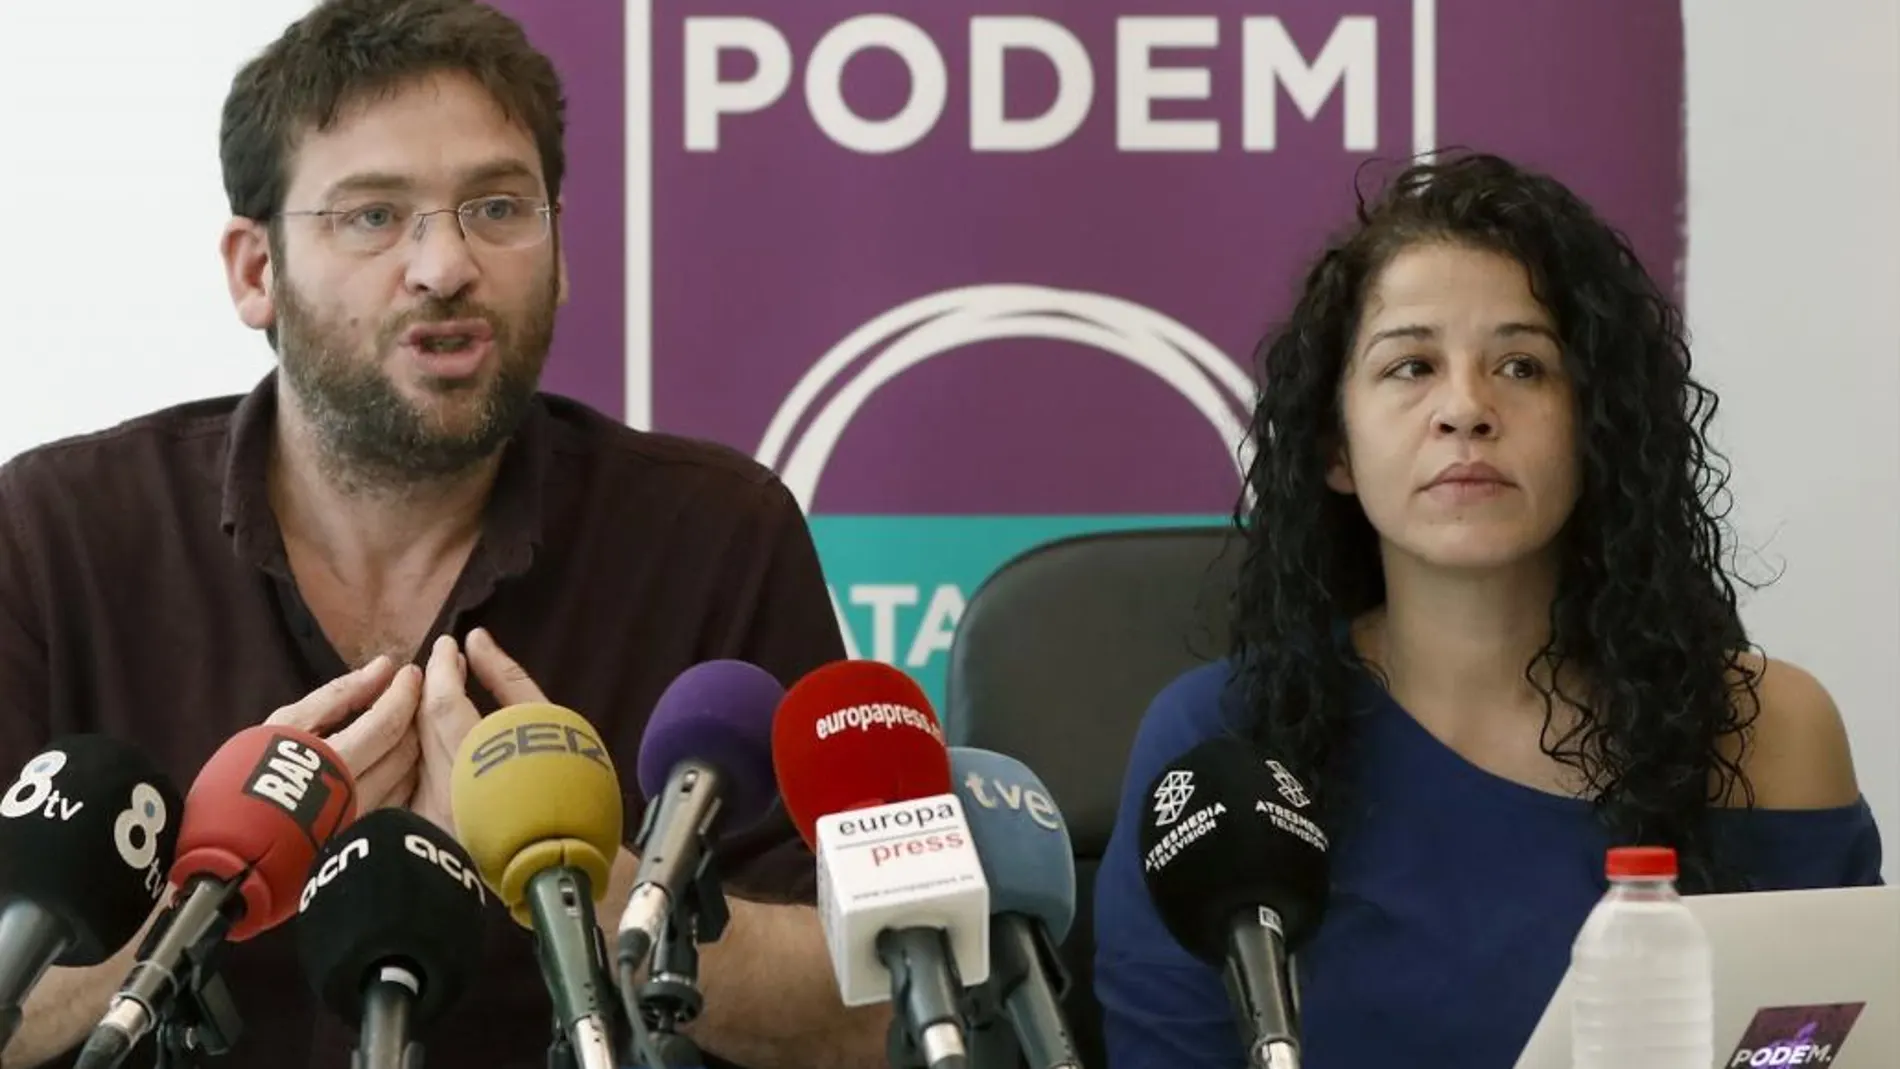 El líder de Podem, Albano Dante Fachin, junto a la secretaria de organización, Ruth Moreta